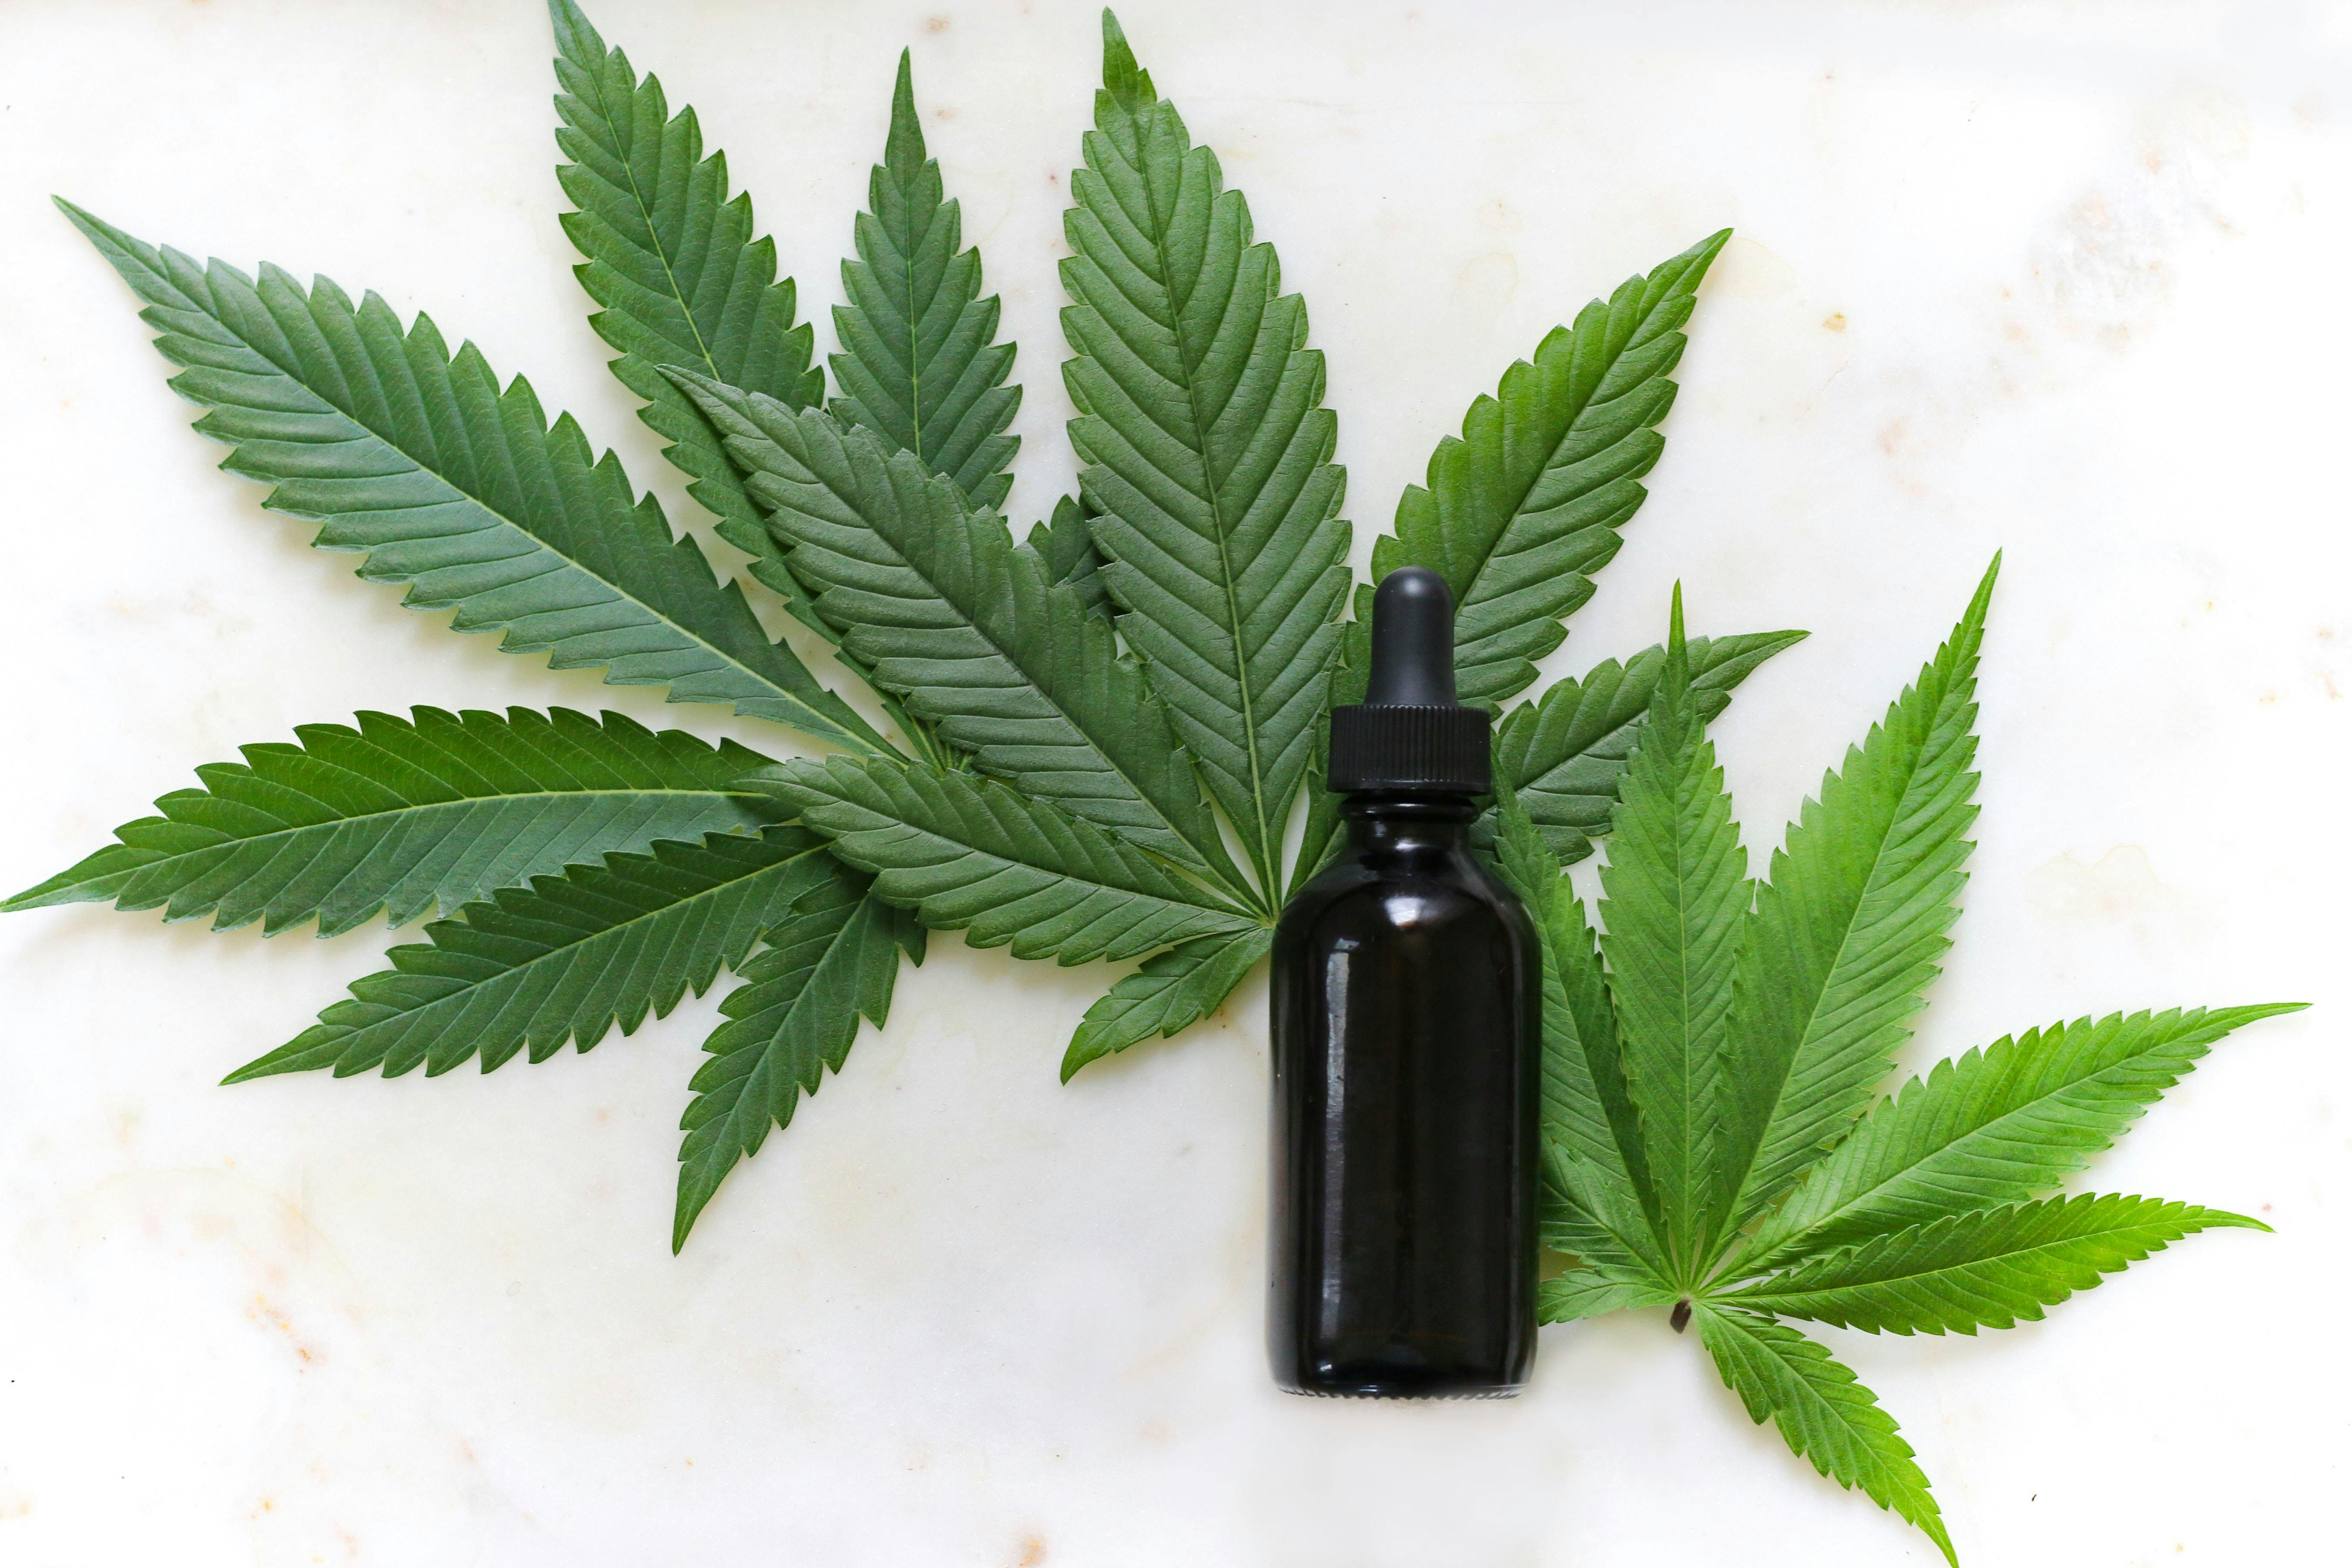 Demystifying Cannabis Growth 27 Jul 2019